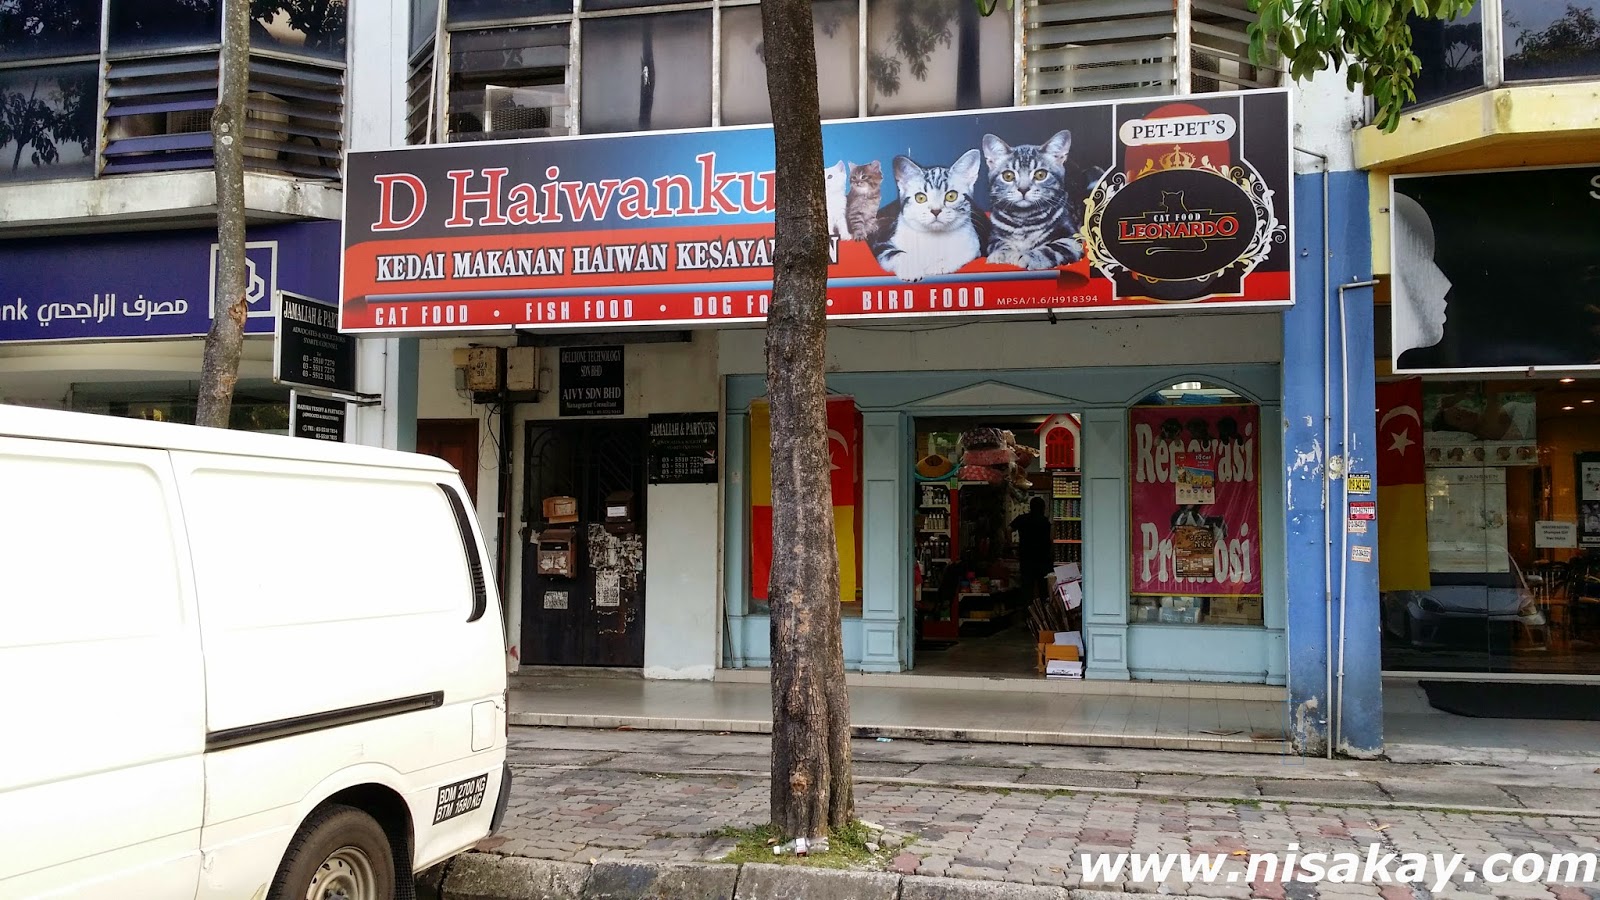  Kedai  Untuk Disewa Di Shah  Alam  2014 kedai  untuk disewa 